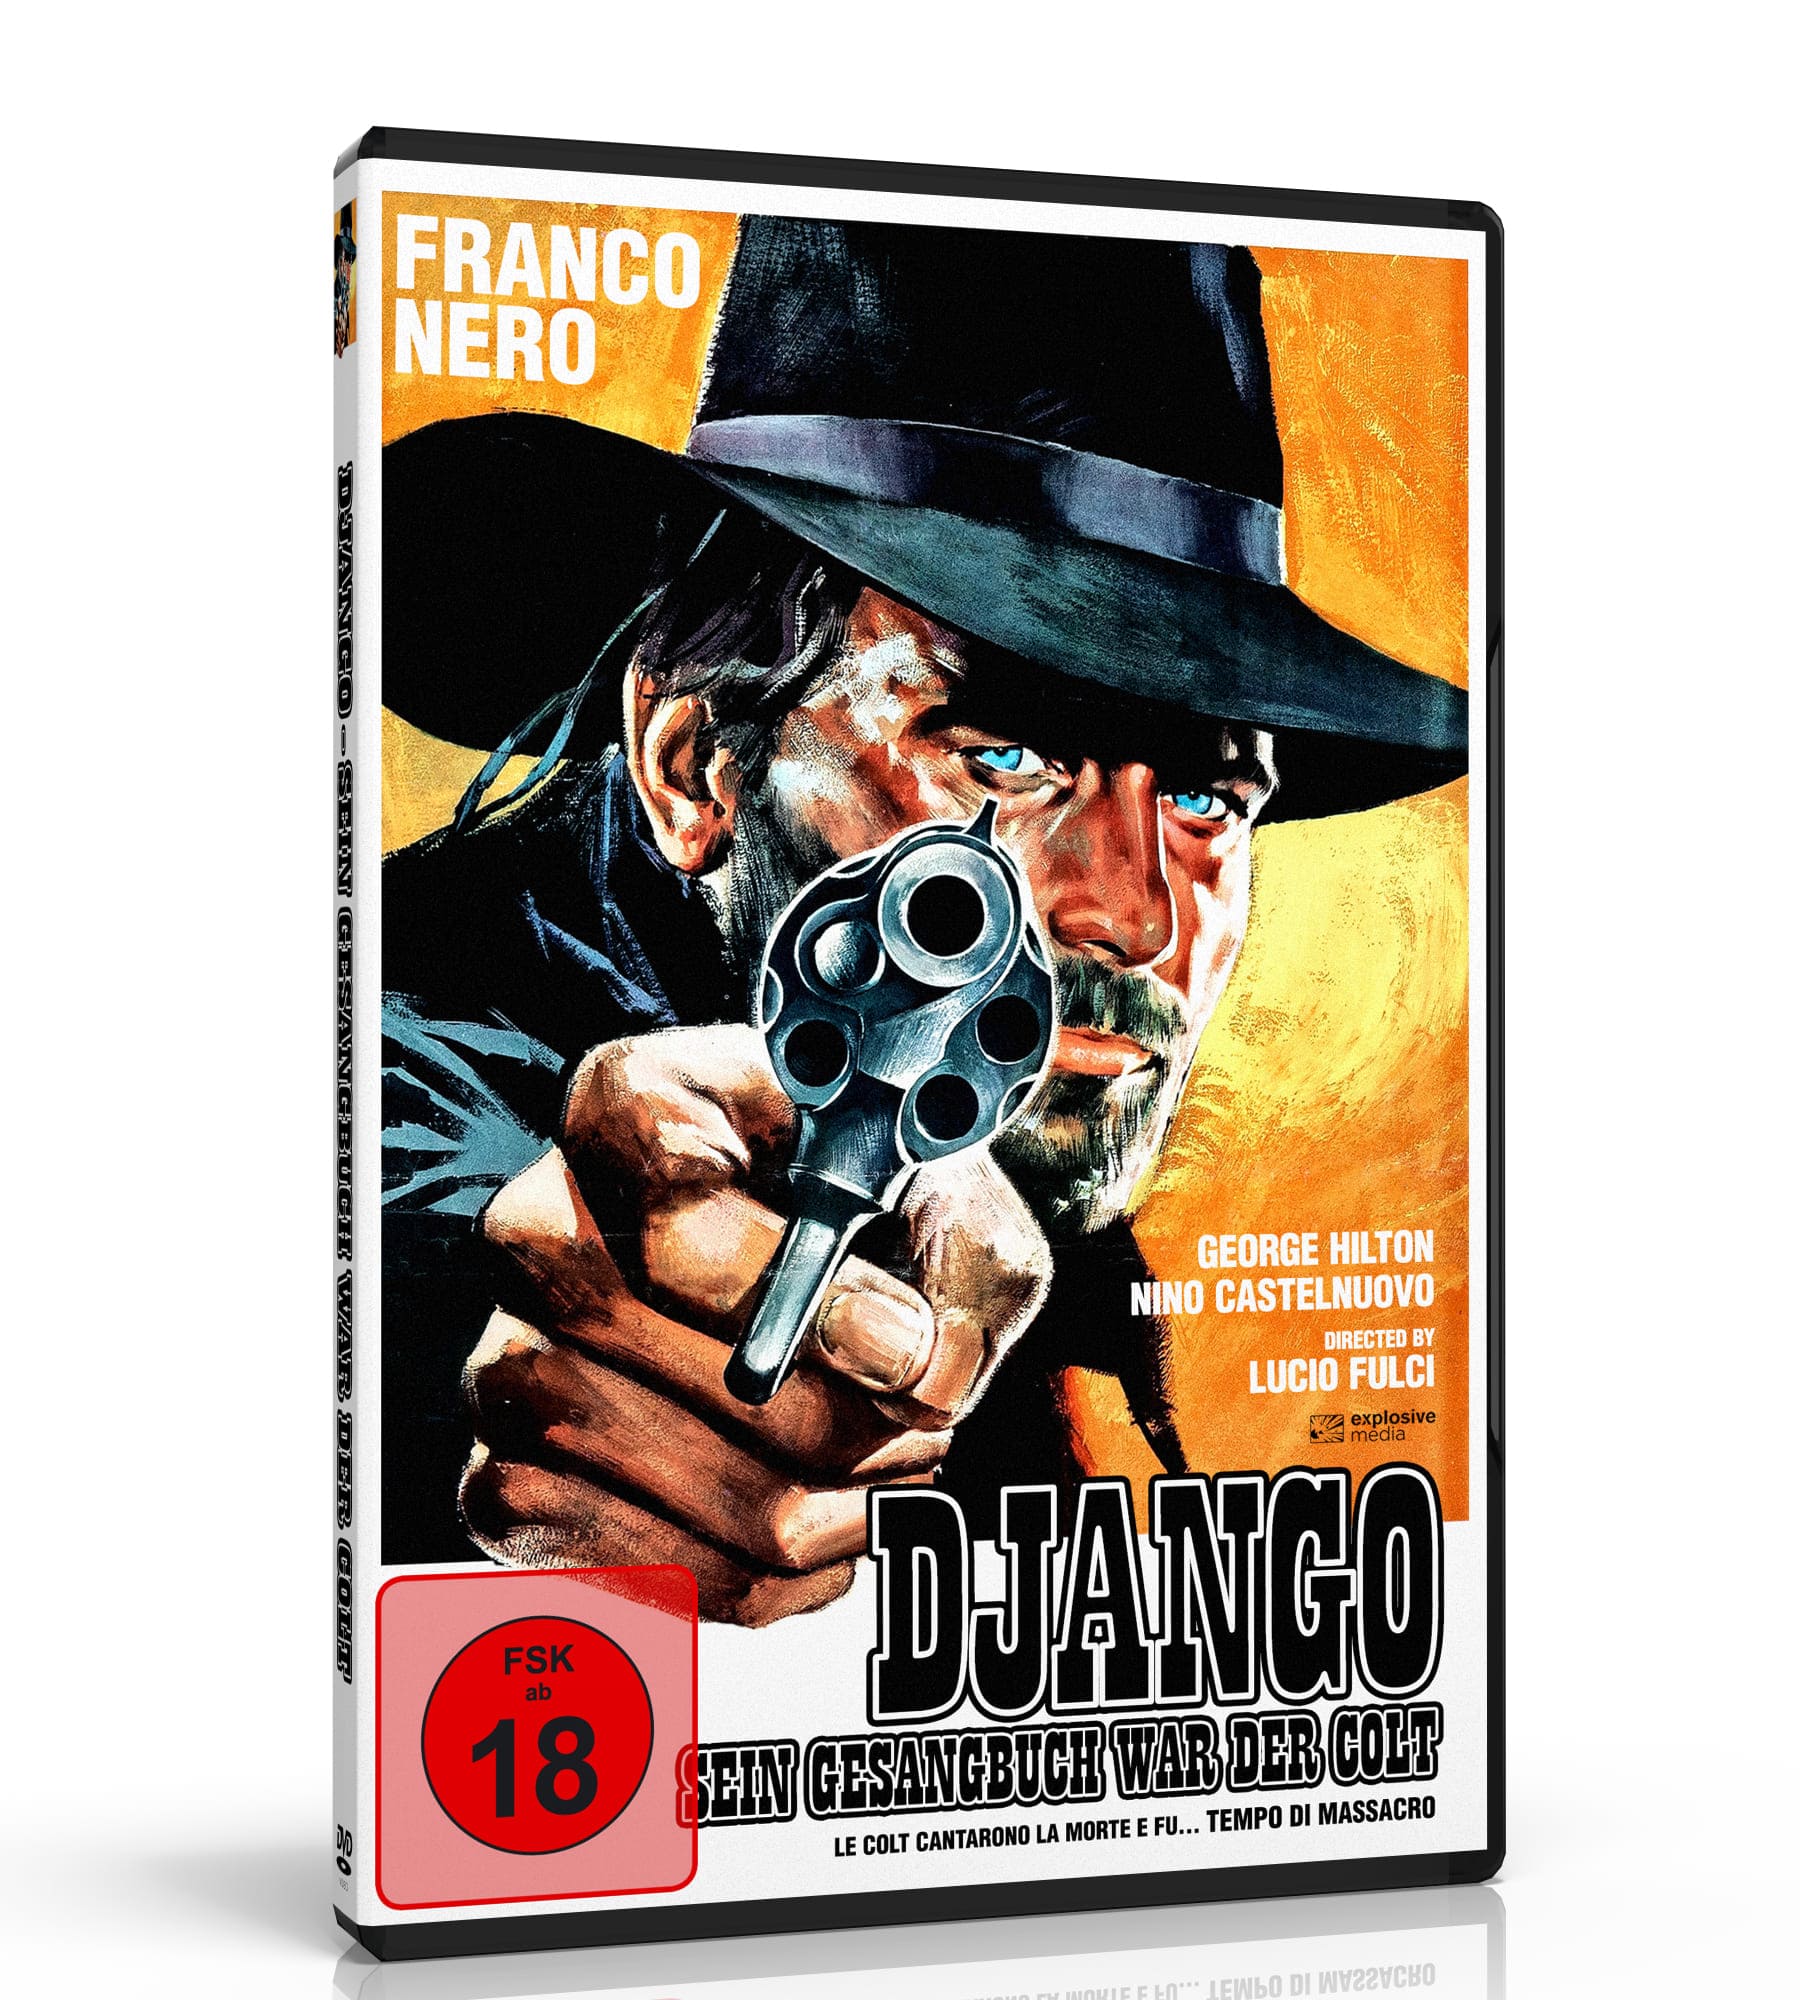 Django - Sein Gesangbuch war der Colt (DVD) Image 2